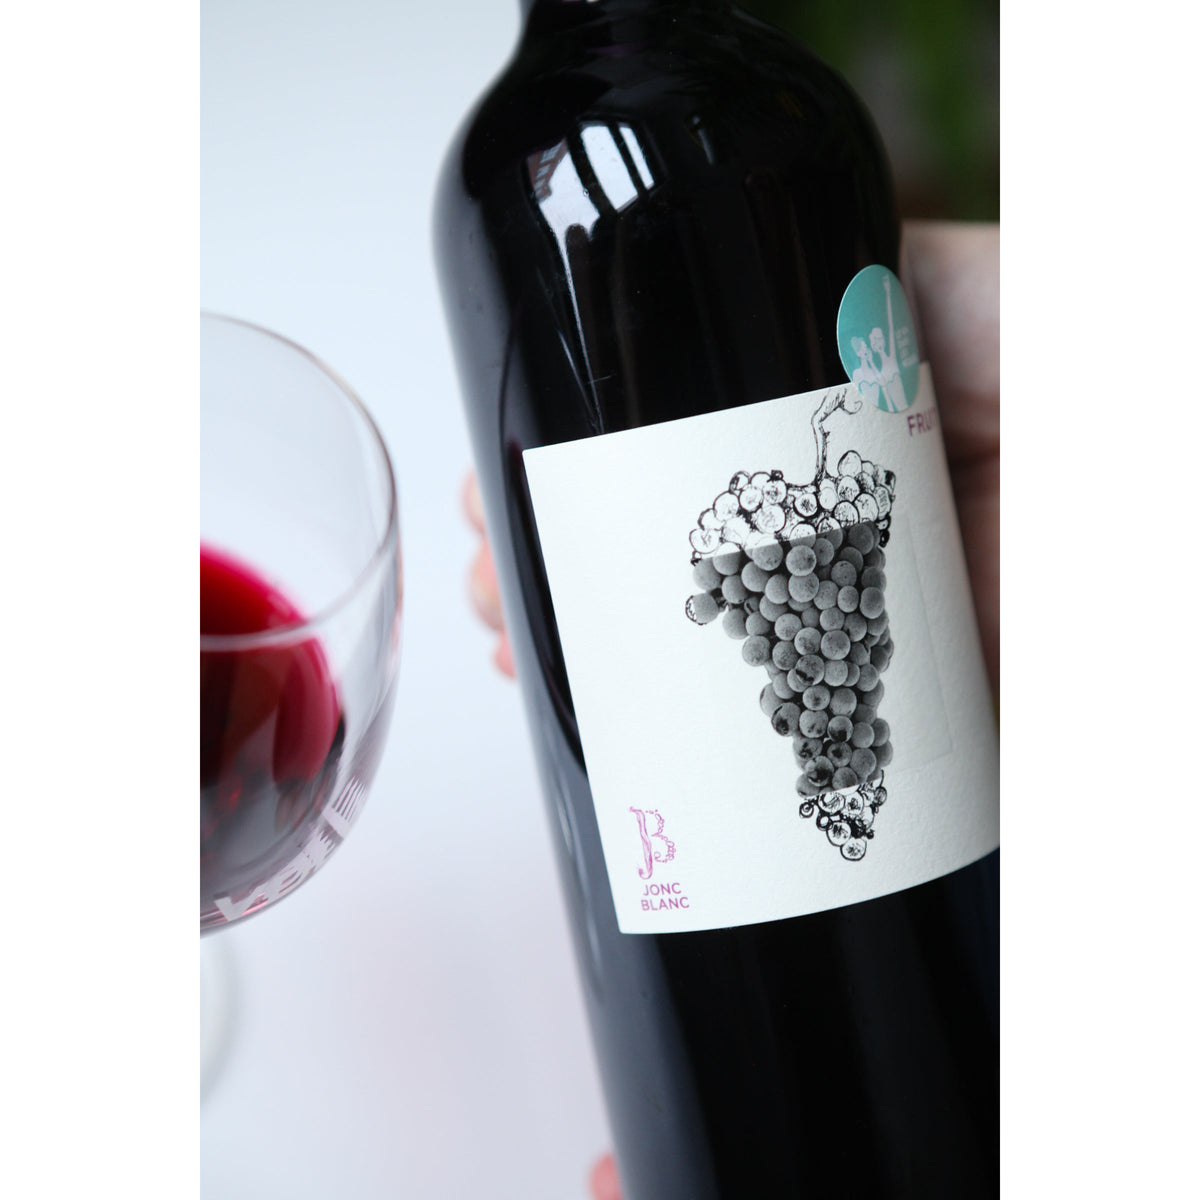 Fruit 2019 - Rouge - Domaine Jonc-Blanc - Le vin dans les voiles